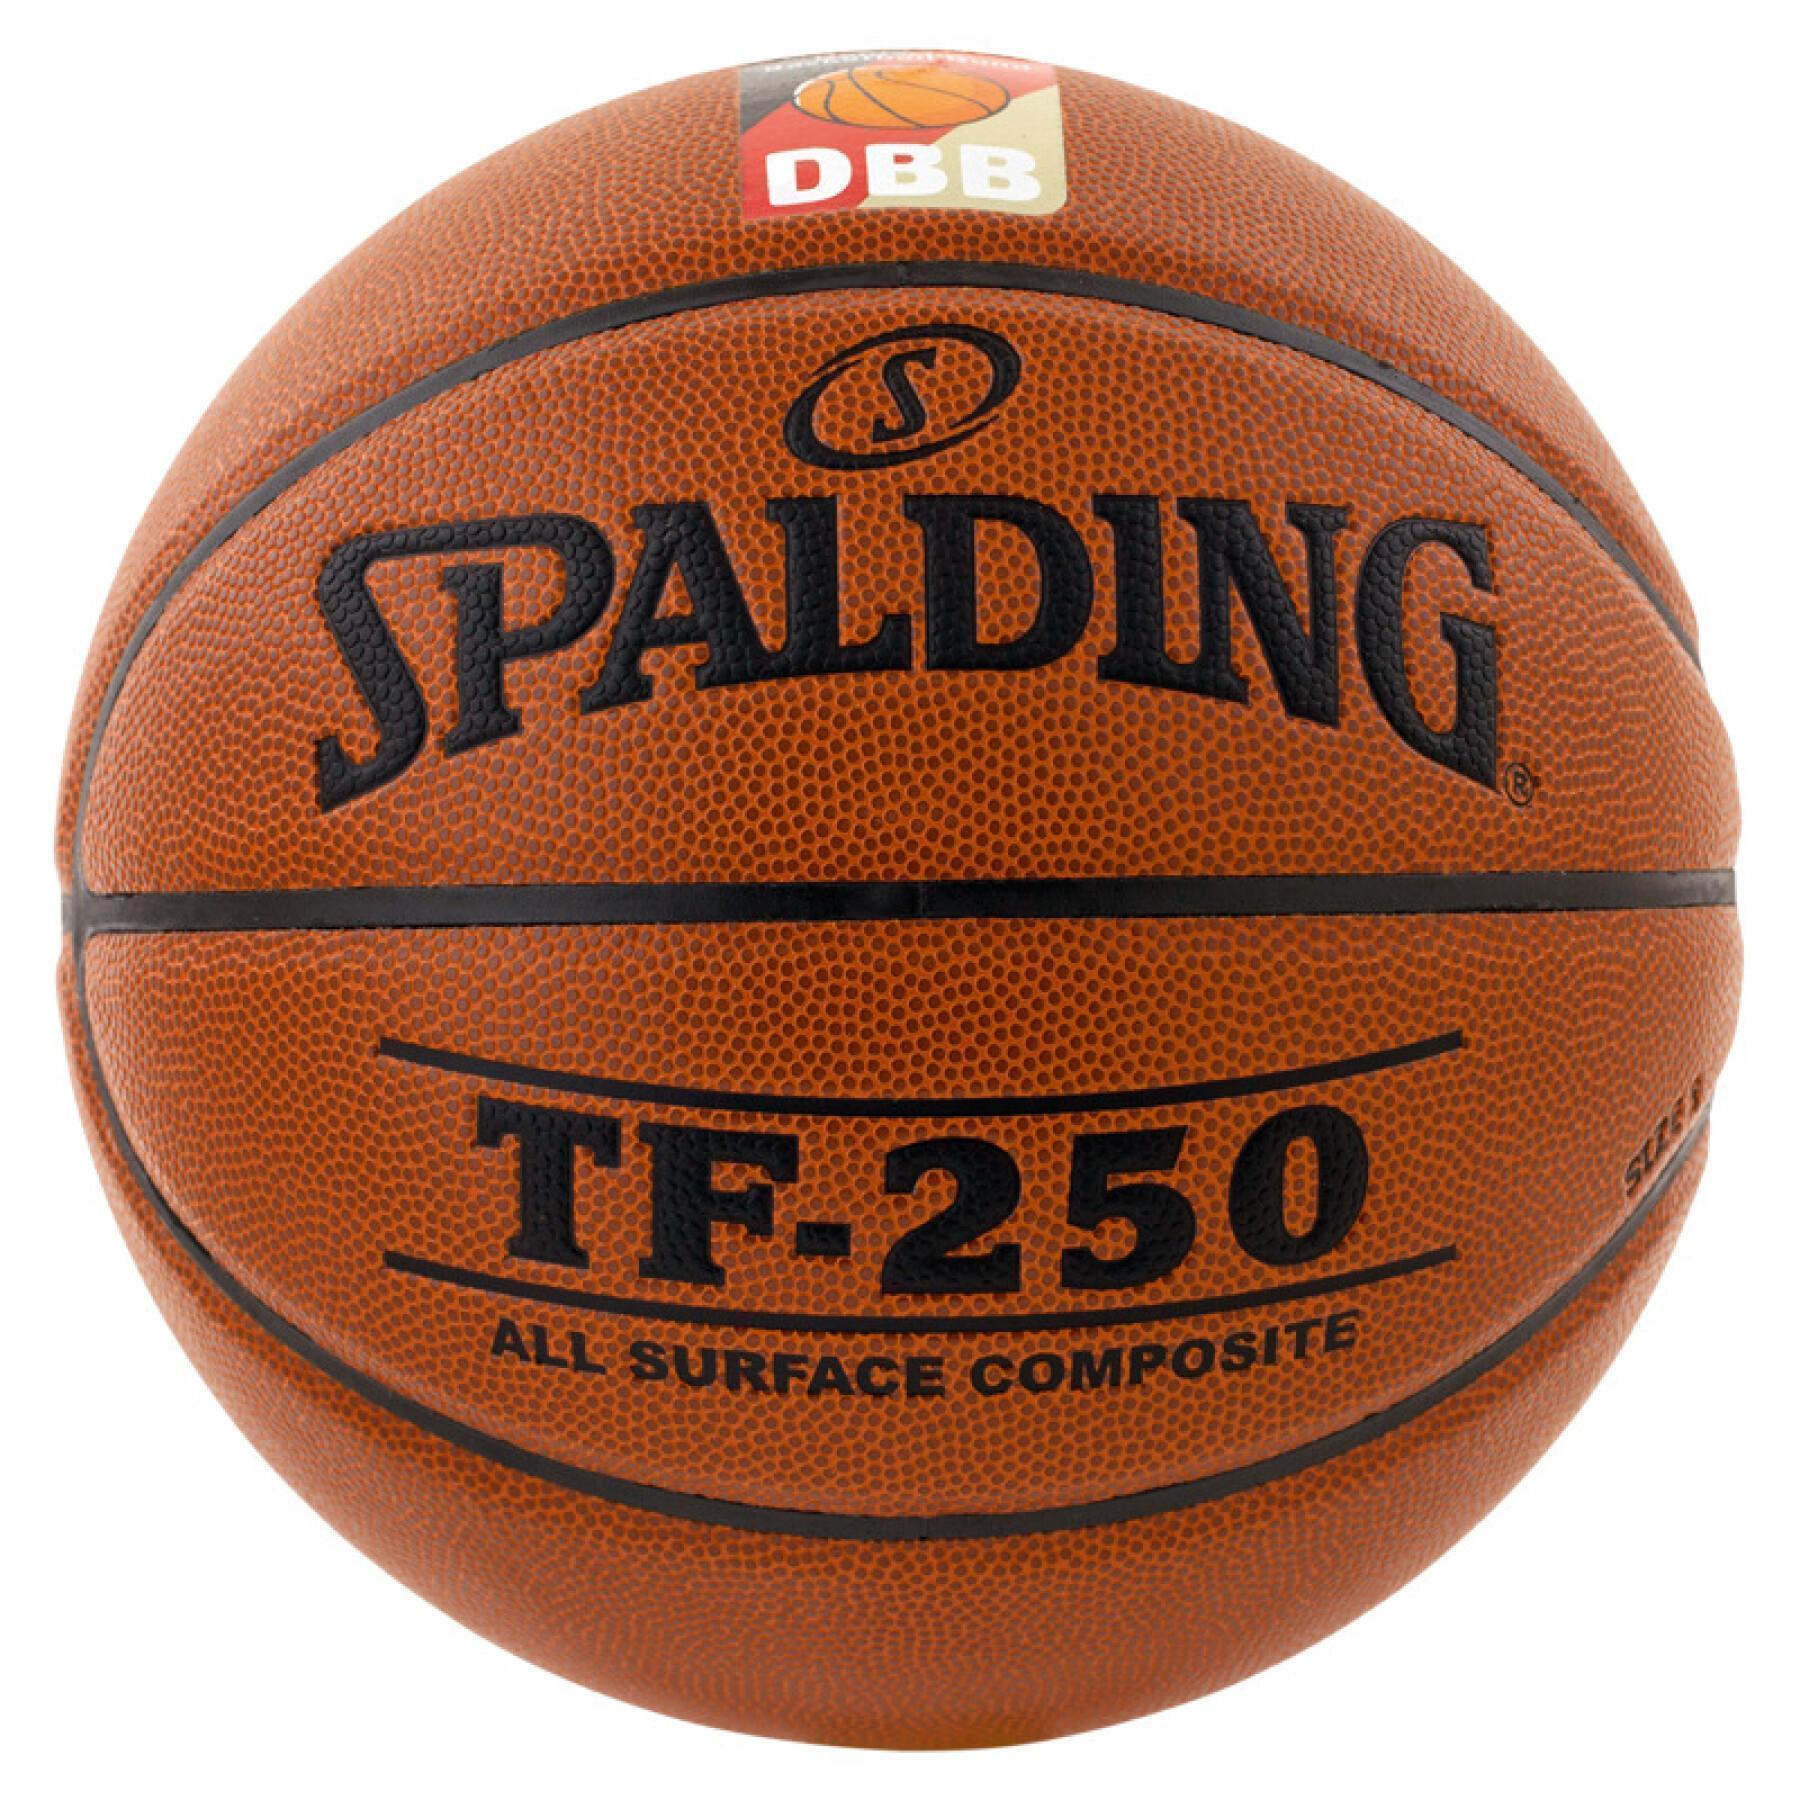 Ballong Spalding DBB Tf250 (74-592z)